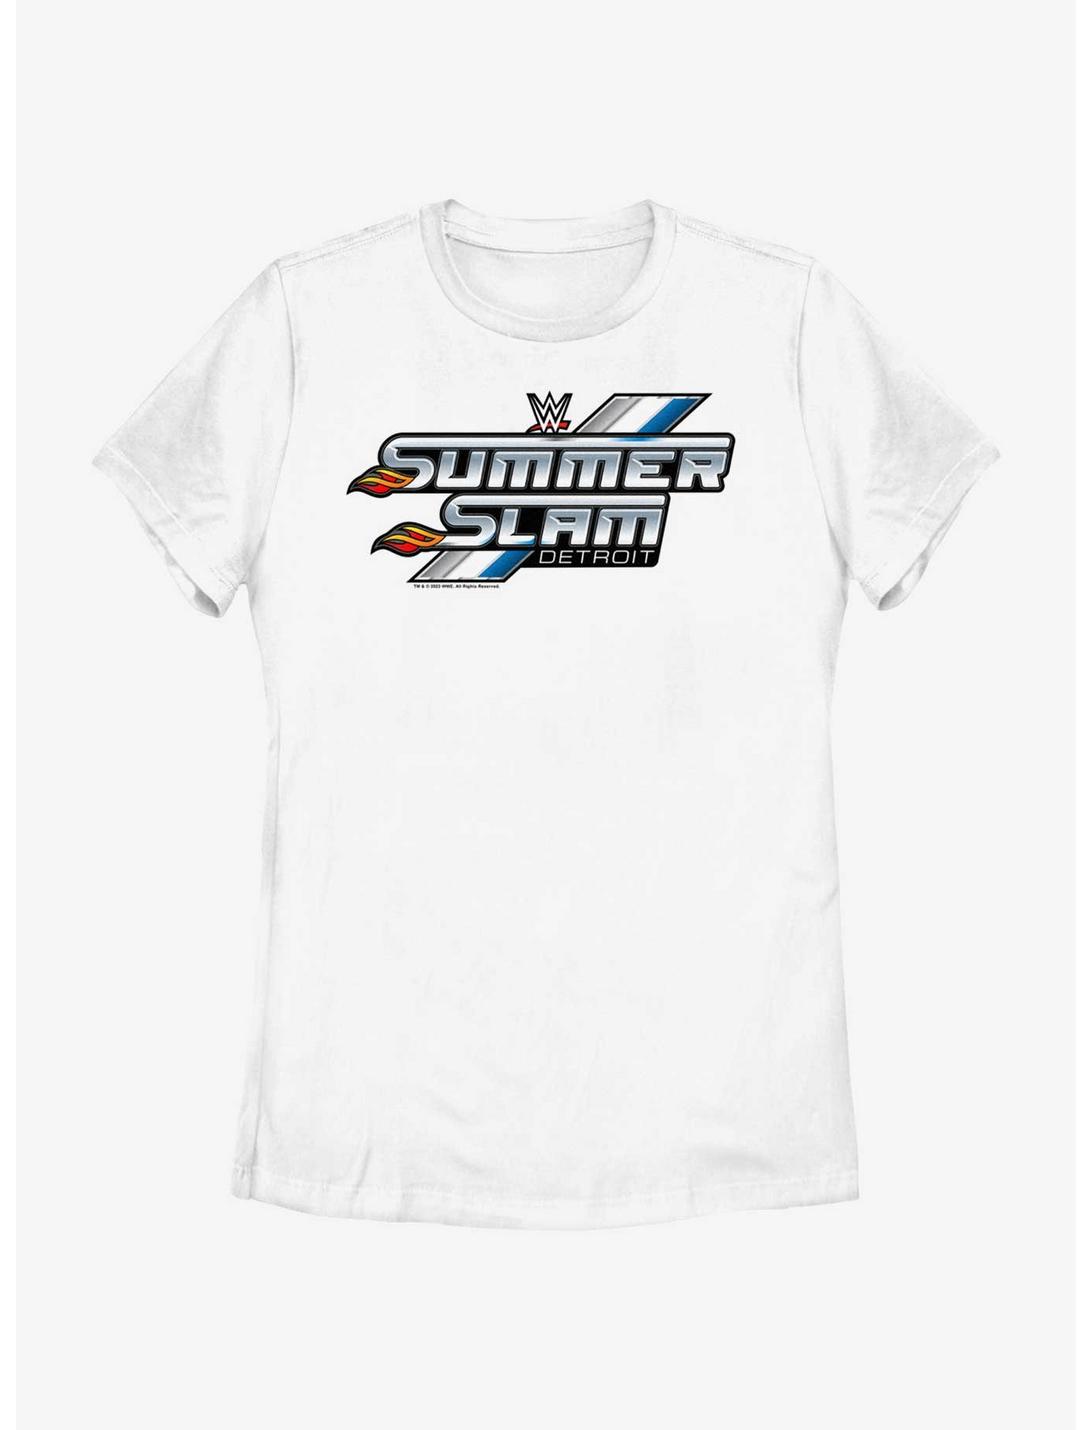 WWE Summerslam Detroit Outline Logo Womens T-Shirt, WHITE, hi-res